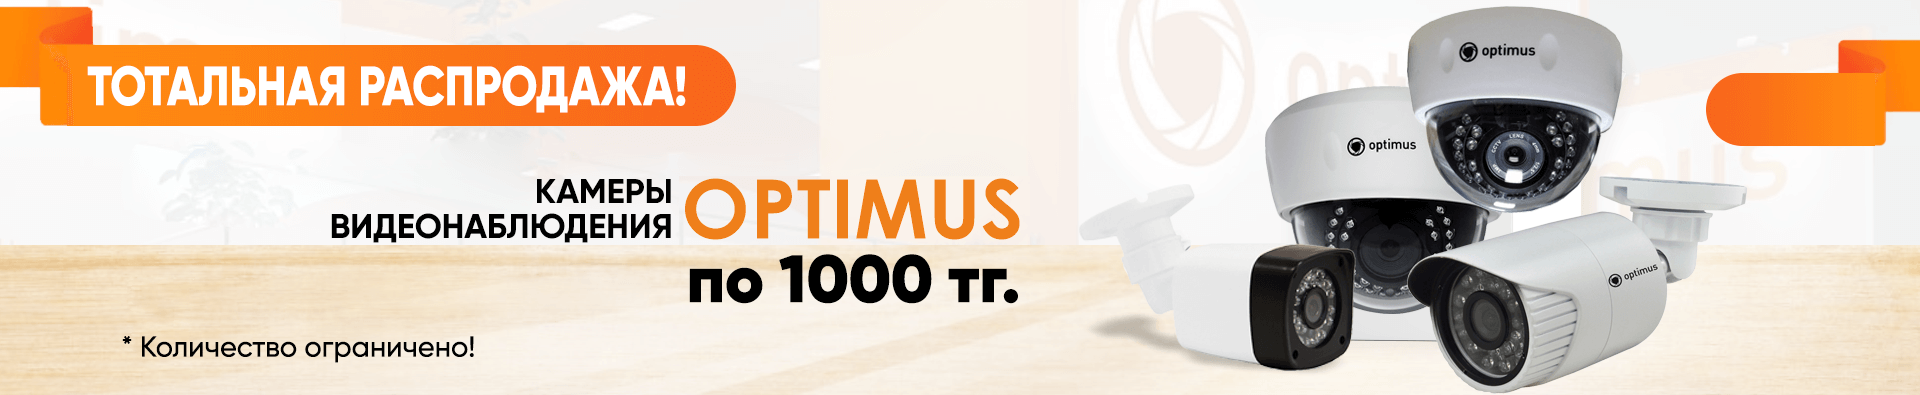 Optimus_sale1000